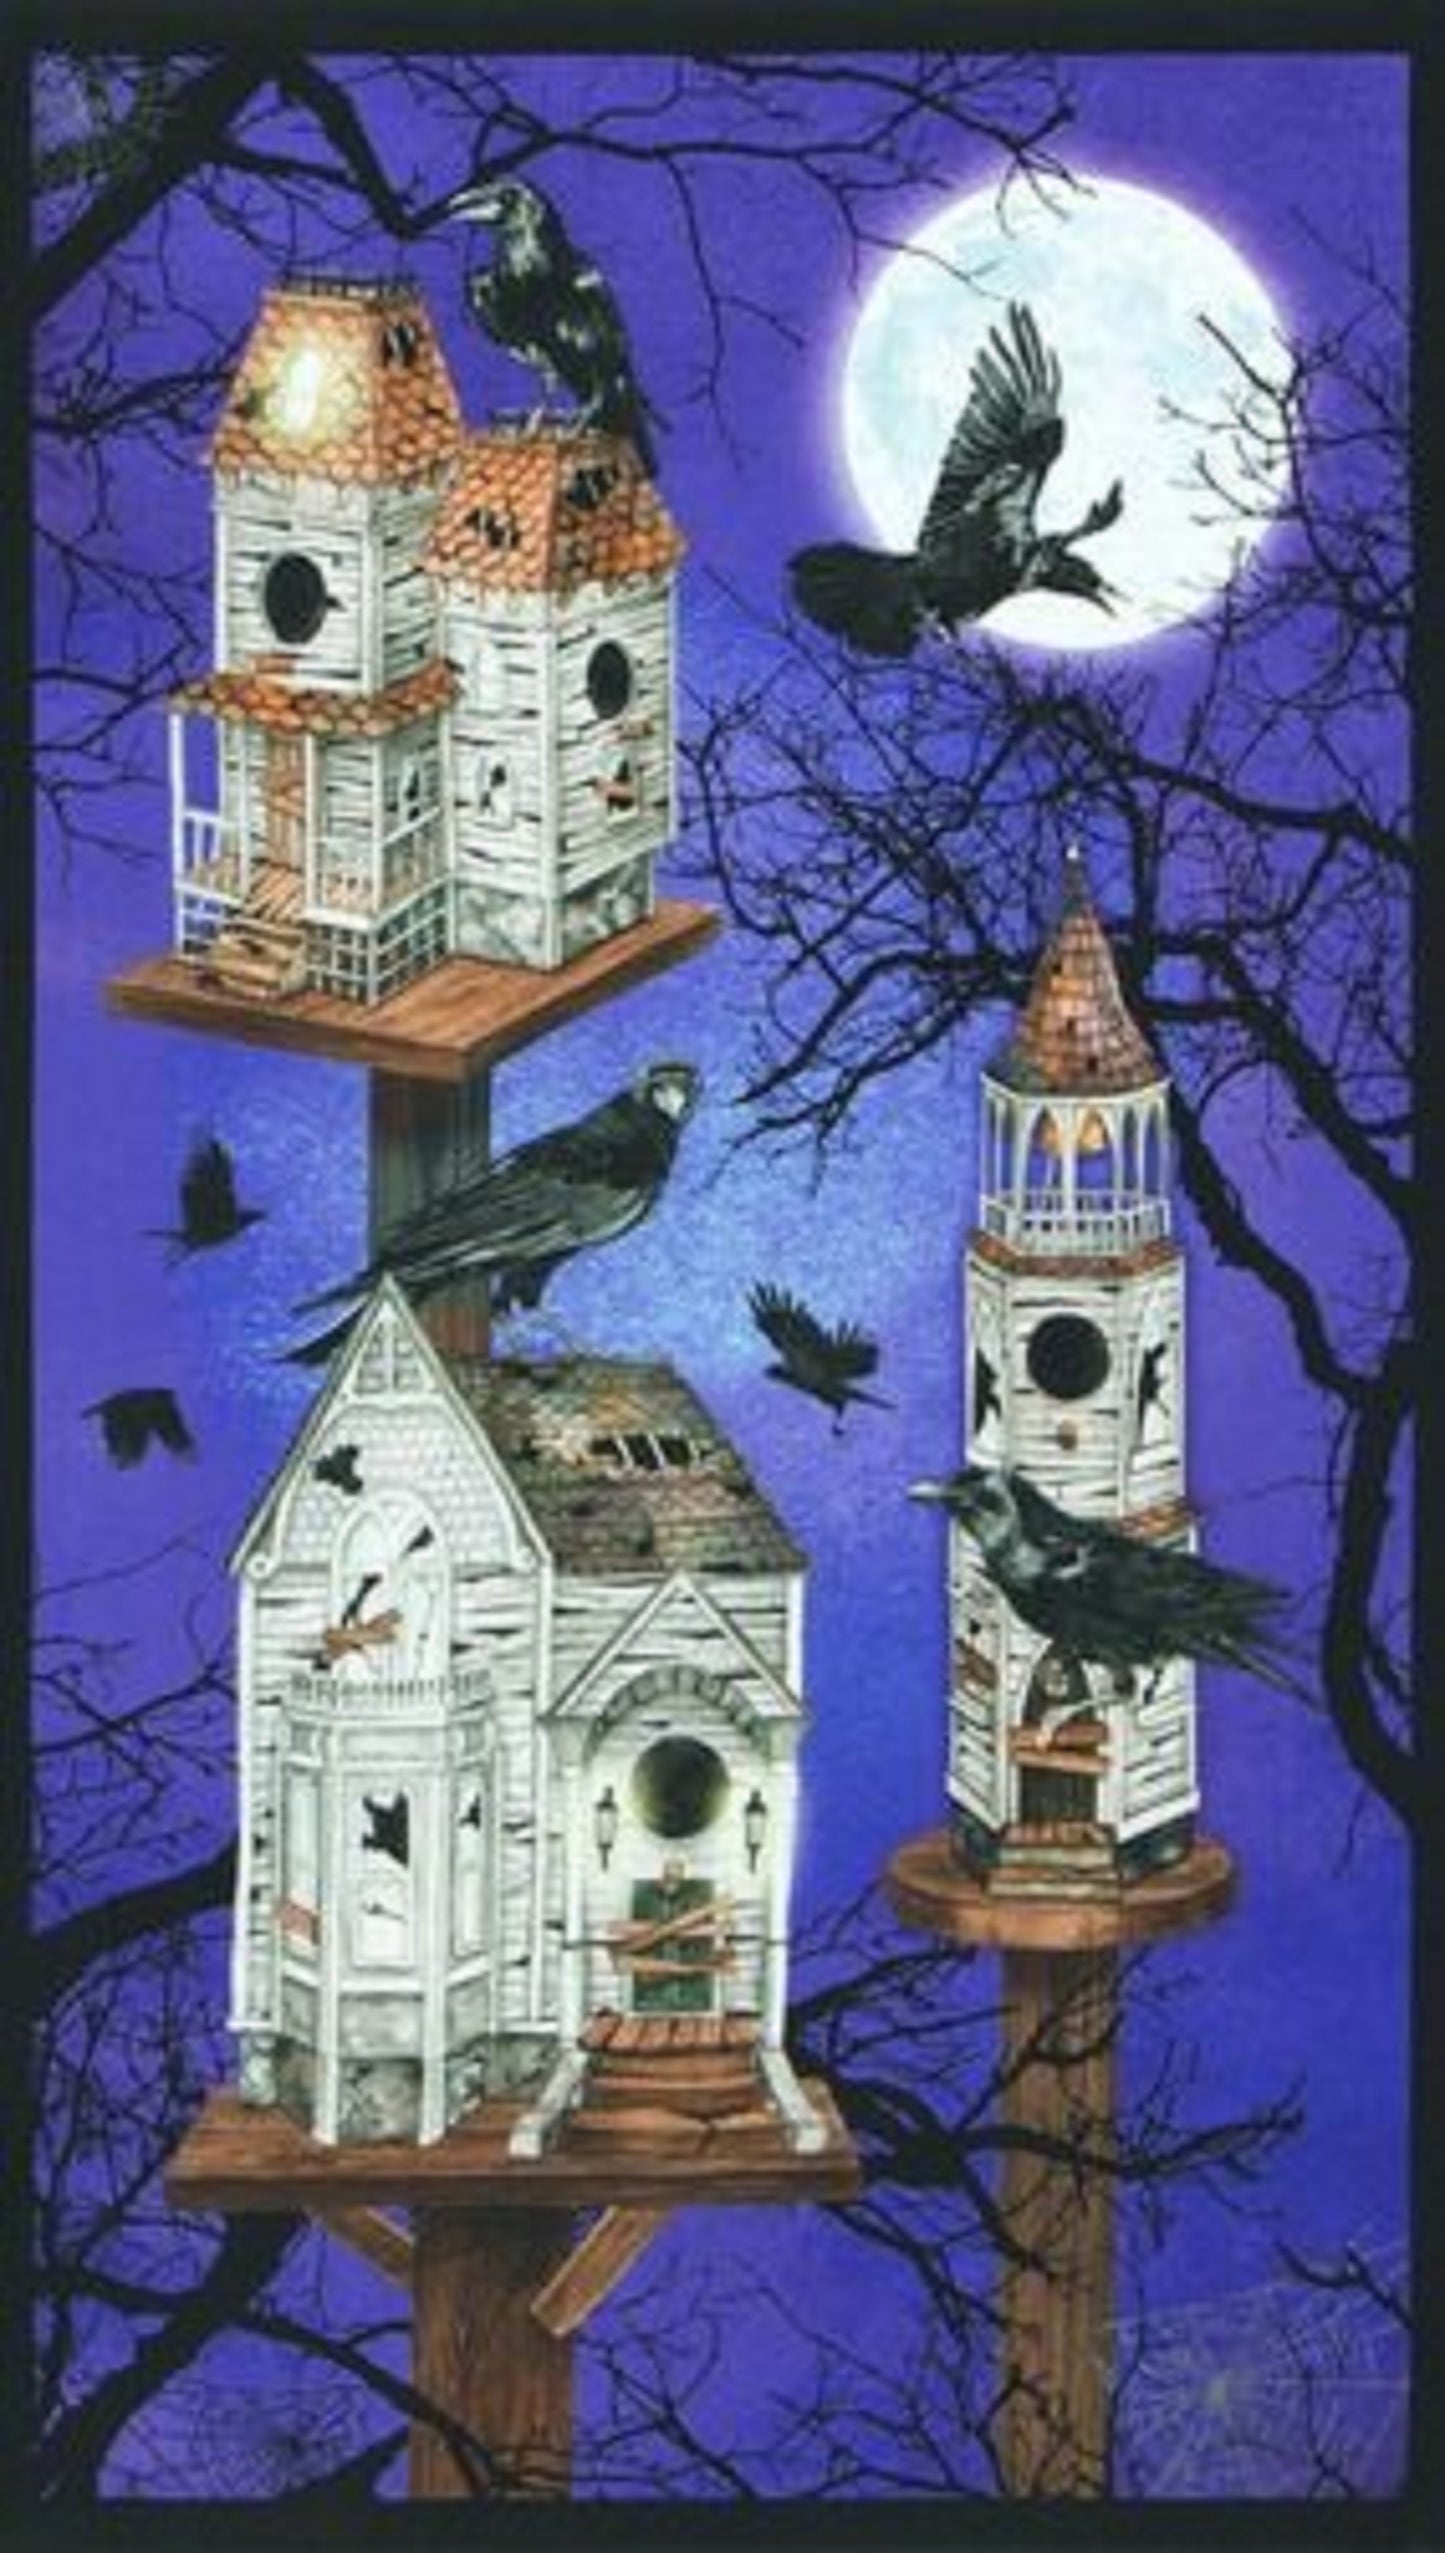 Raven Moon "Gumdrop" Panel by Robert Kaufman